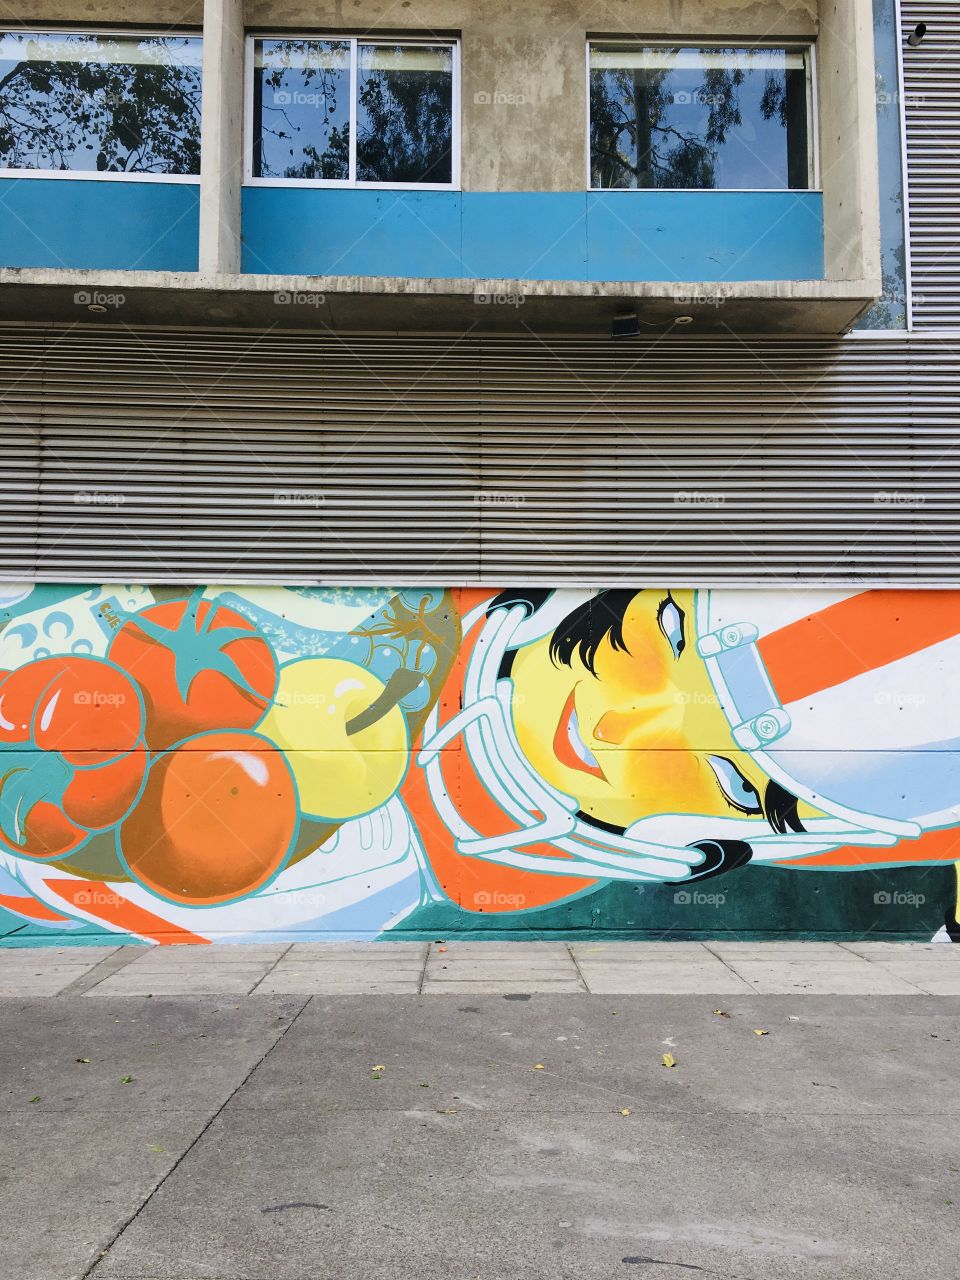 Los murales son parte de la cultura urbana , adornan las calles 